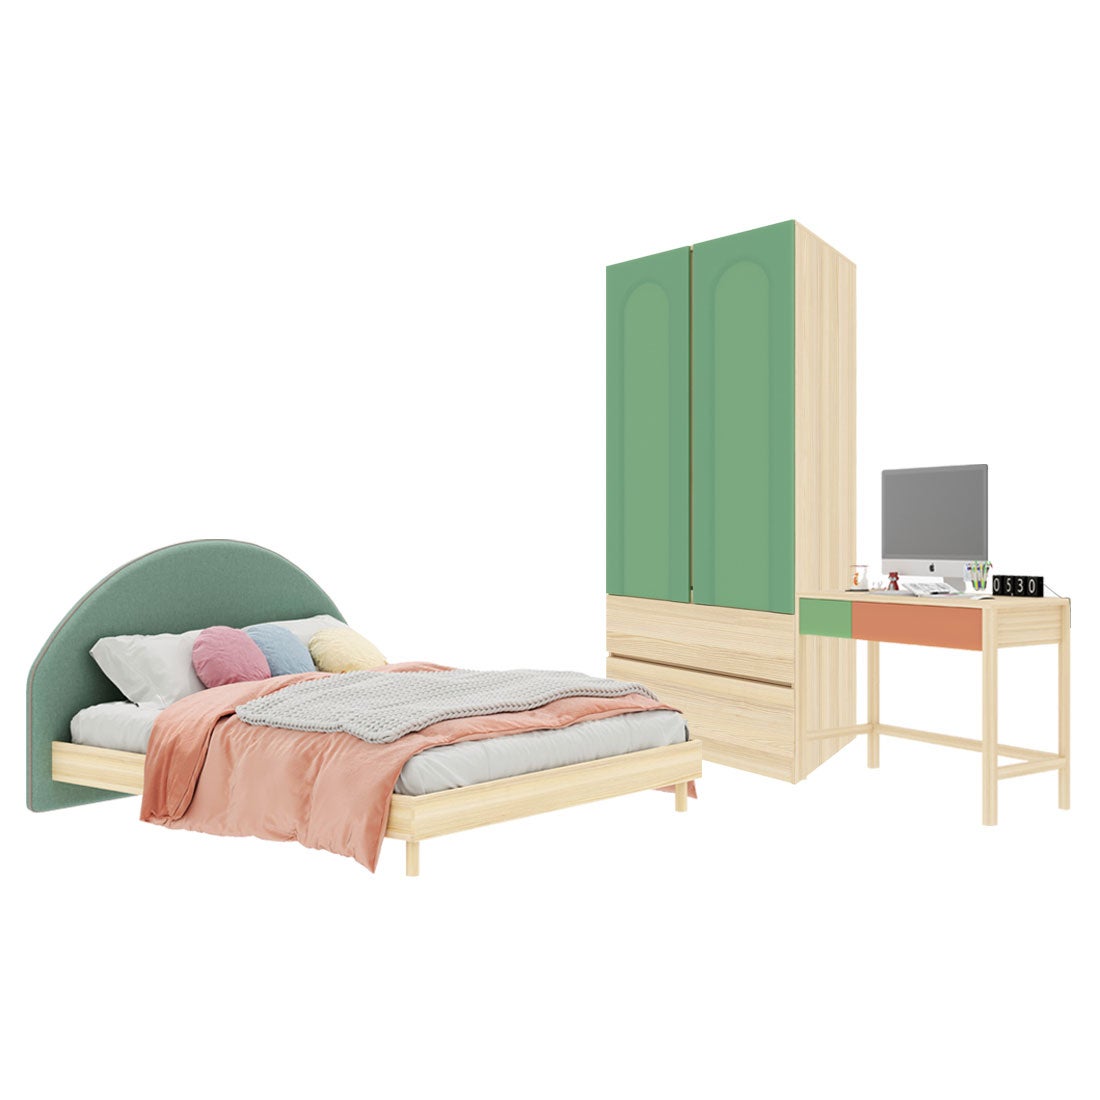 ชุดห้องนอน ขนาด 5 ฟุต-เบาะเขียว รุ่น Bingsoo & ตู้เสื้อผ้าลิ้นชัก 90 ซม. สีเขียว01